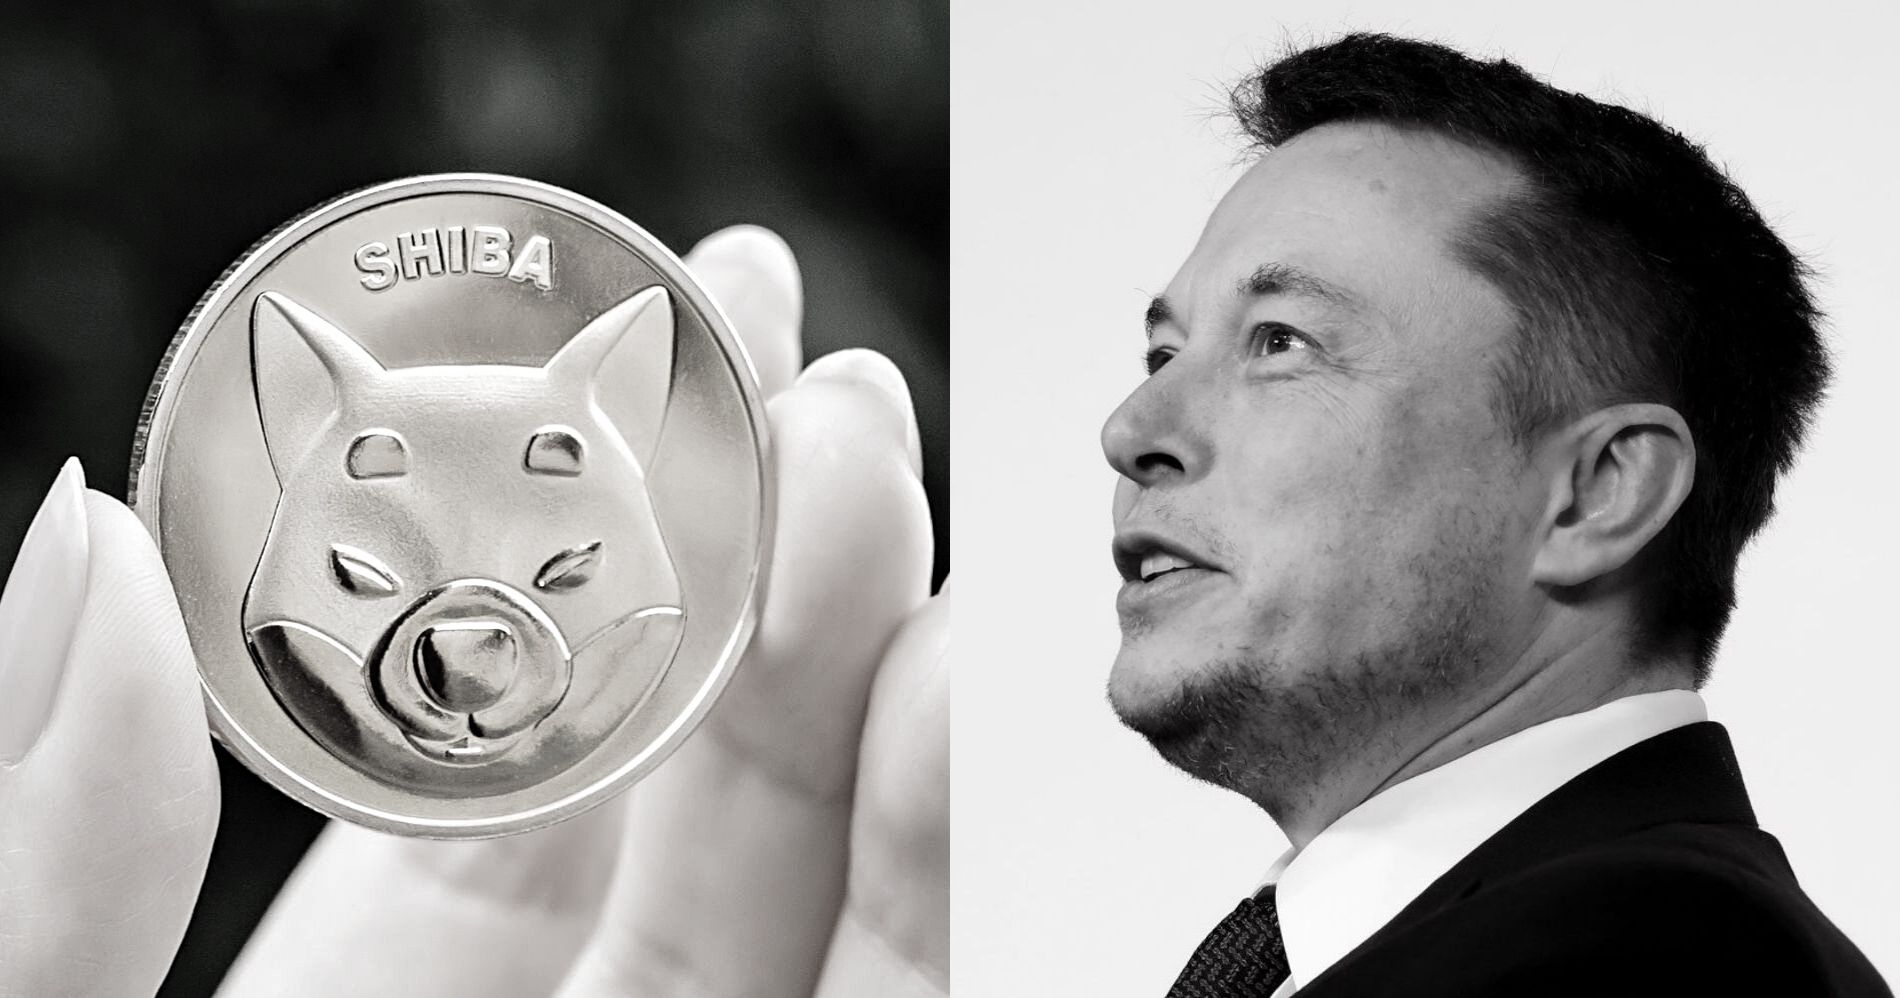 Harga Shiba Inu Terjun Usai Tweet Elon Musk Viral Illustration Bisnis Muda - Image: Canva - Pinterest